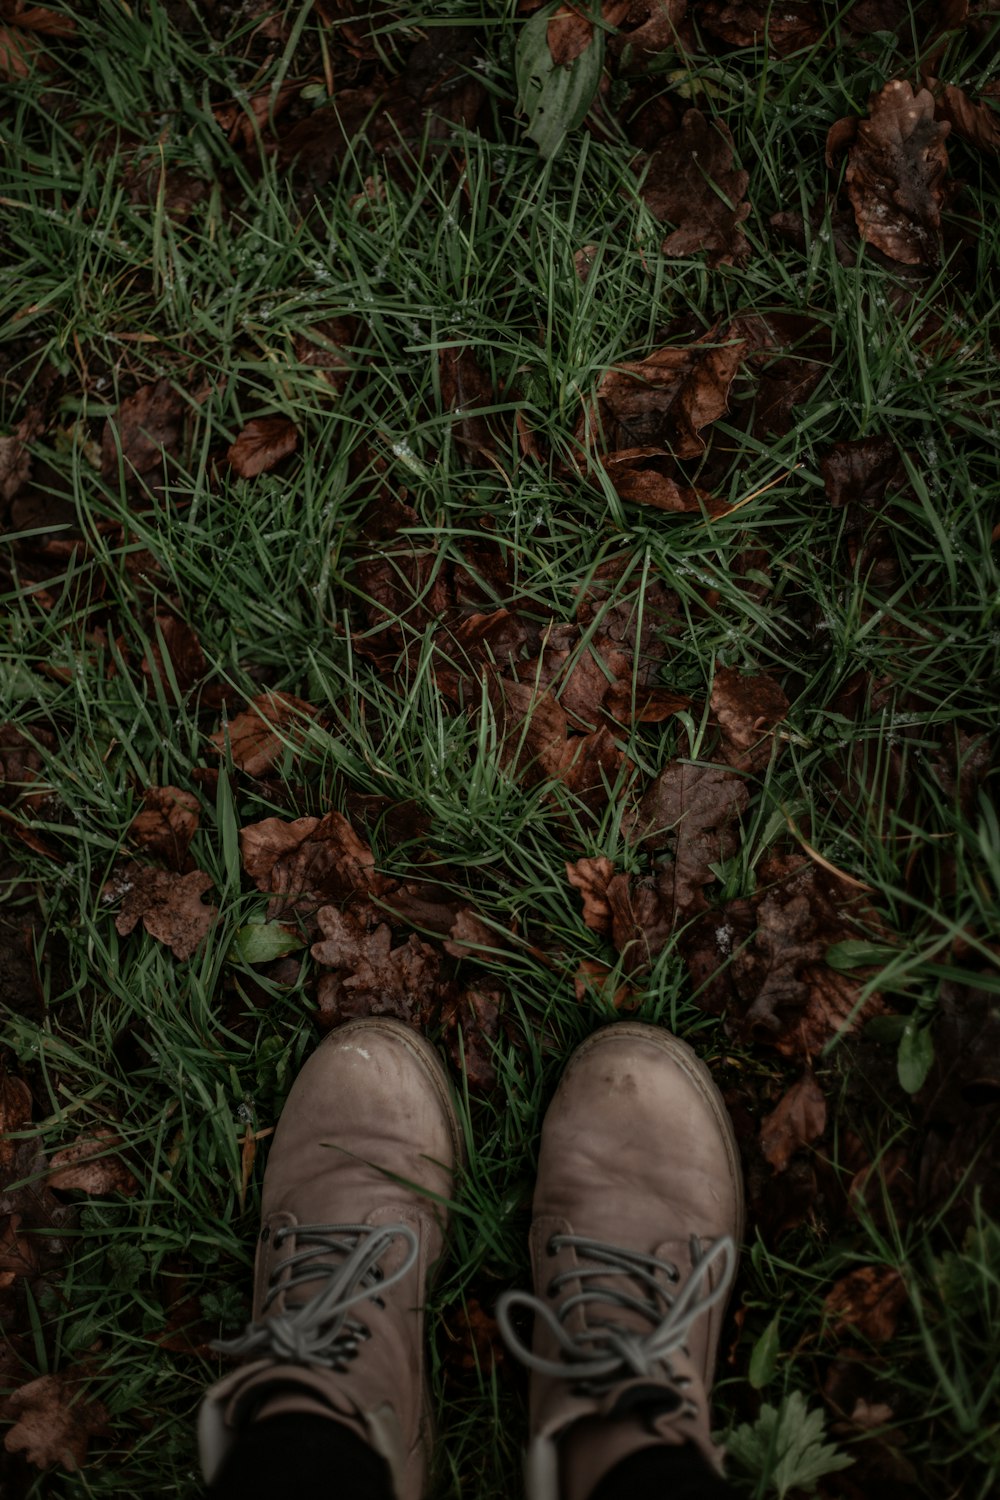 茶色の革靴を履いた人が茶色の枯れ葉の上に立っている